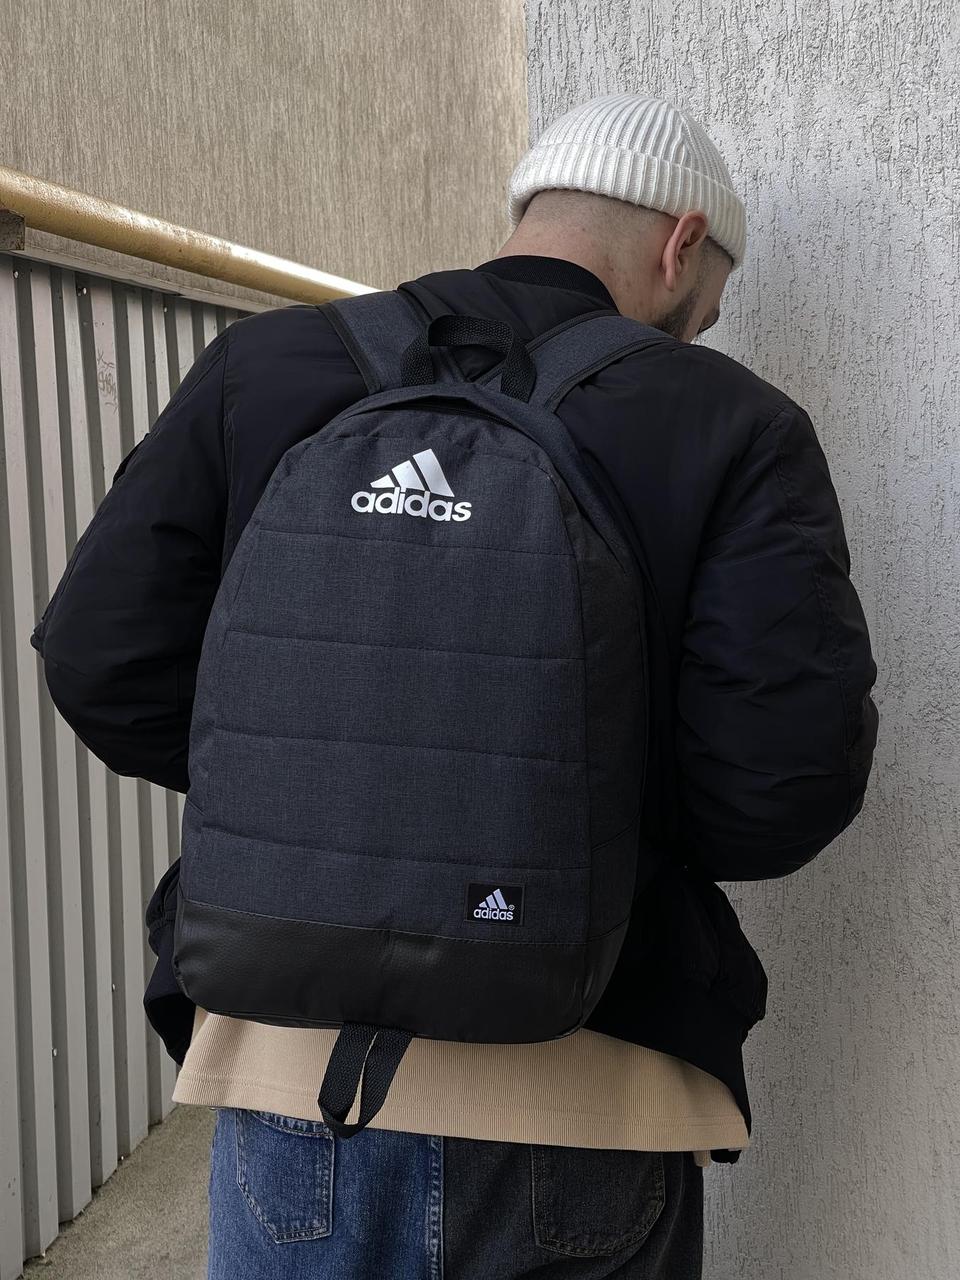 Чоловічий рюкзак Adidas Адідас темний меланж | Сірий чоловічий рюкзак